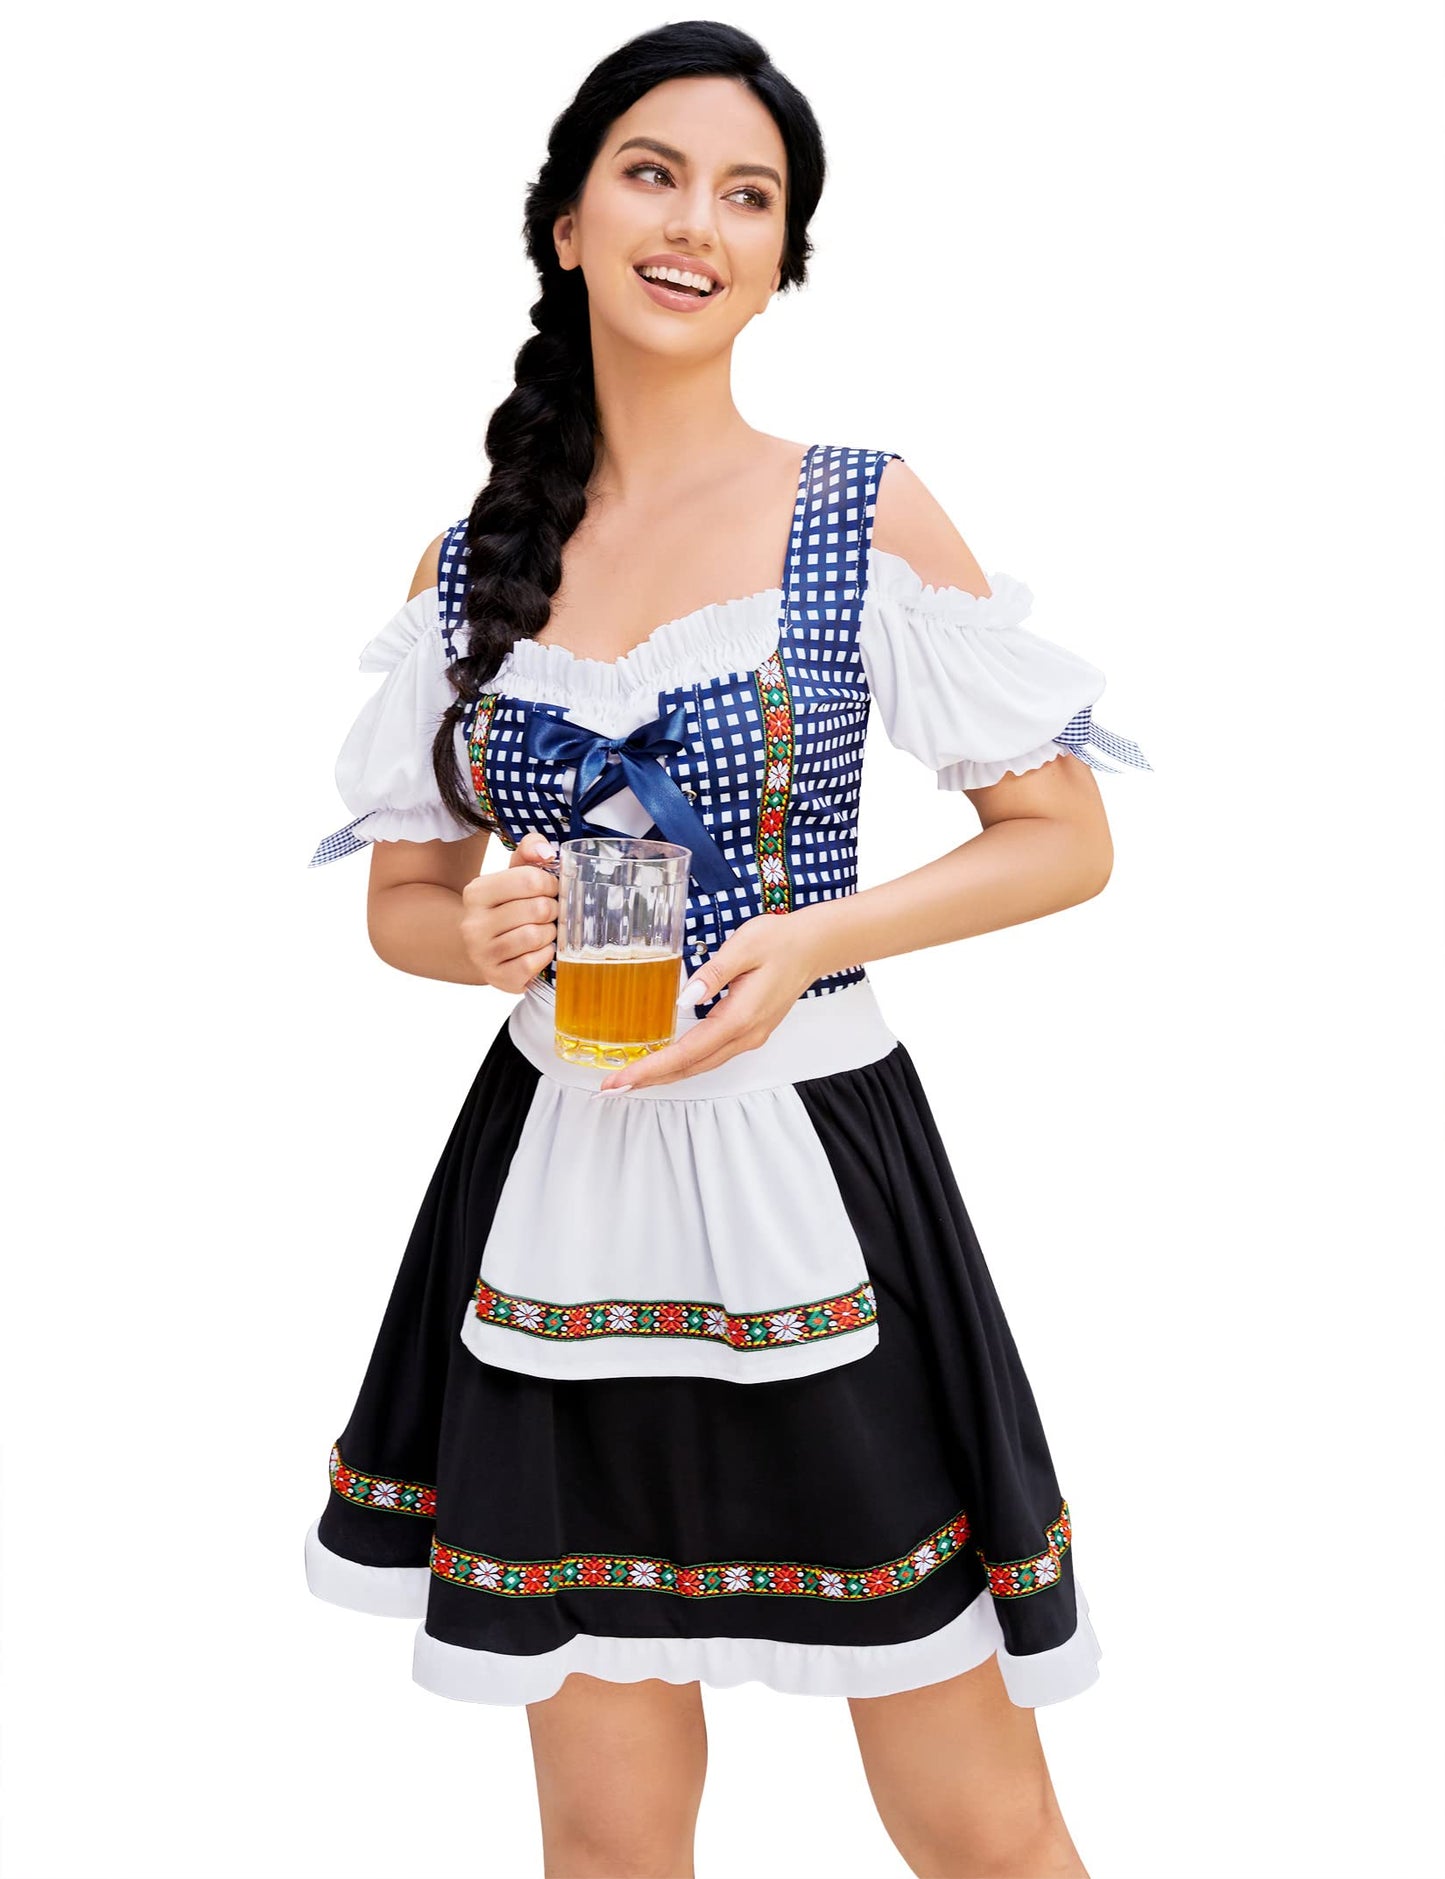 WIESNFASHION Damen Dirndl Kleid Traditionelle Bayerische Oktoberfest Kostüme für Halloween Fasching